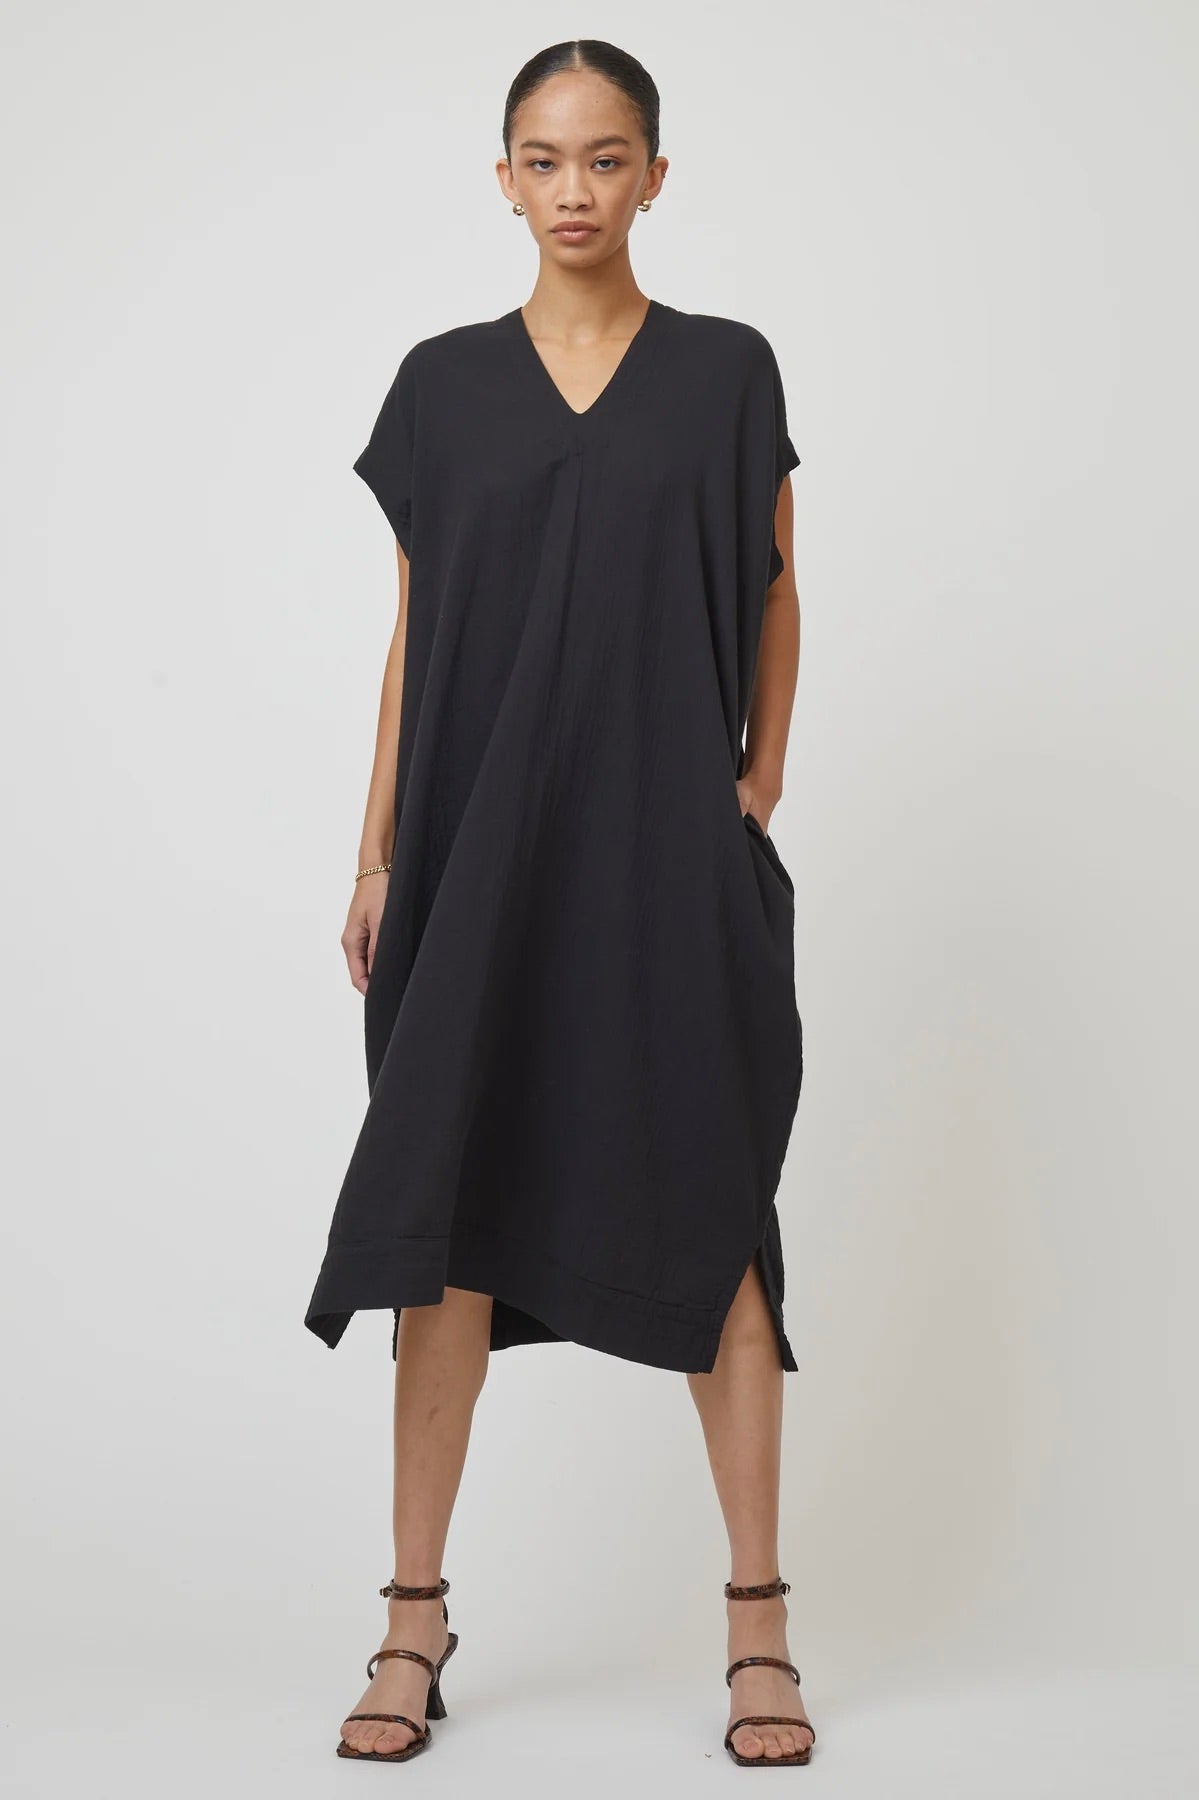 Atelier Delphine Crescent Dress Long / Black